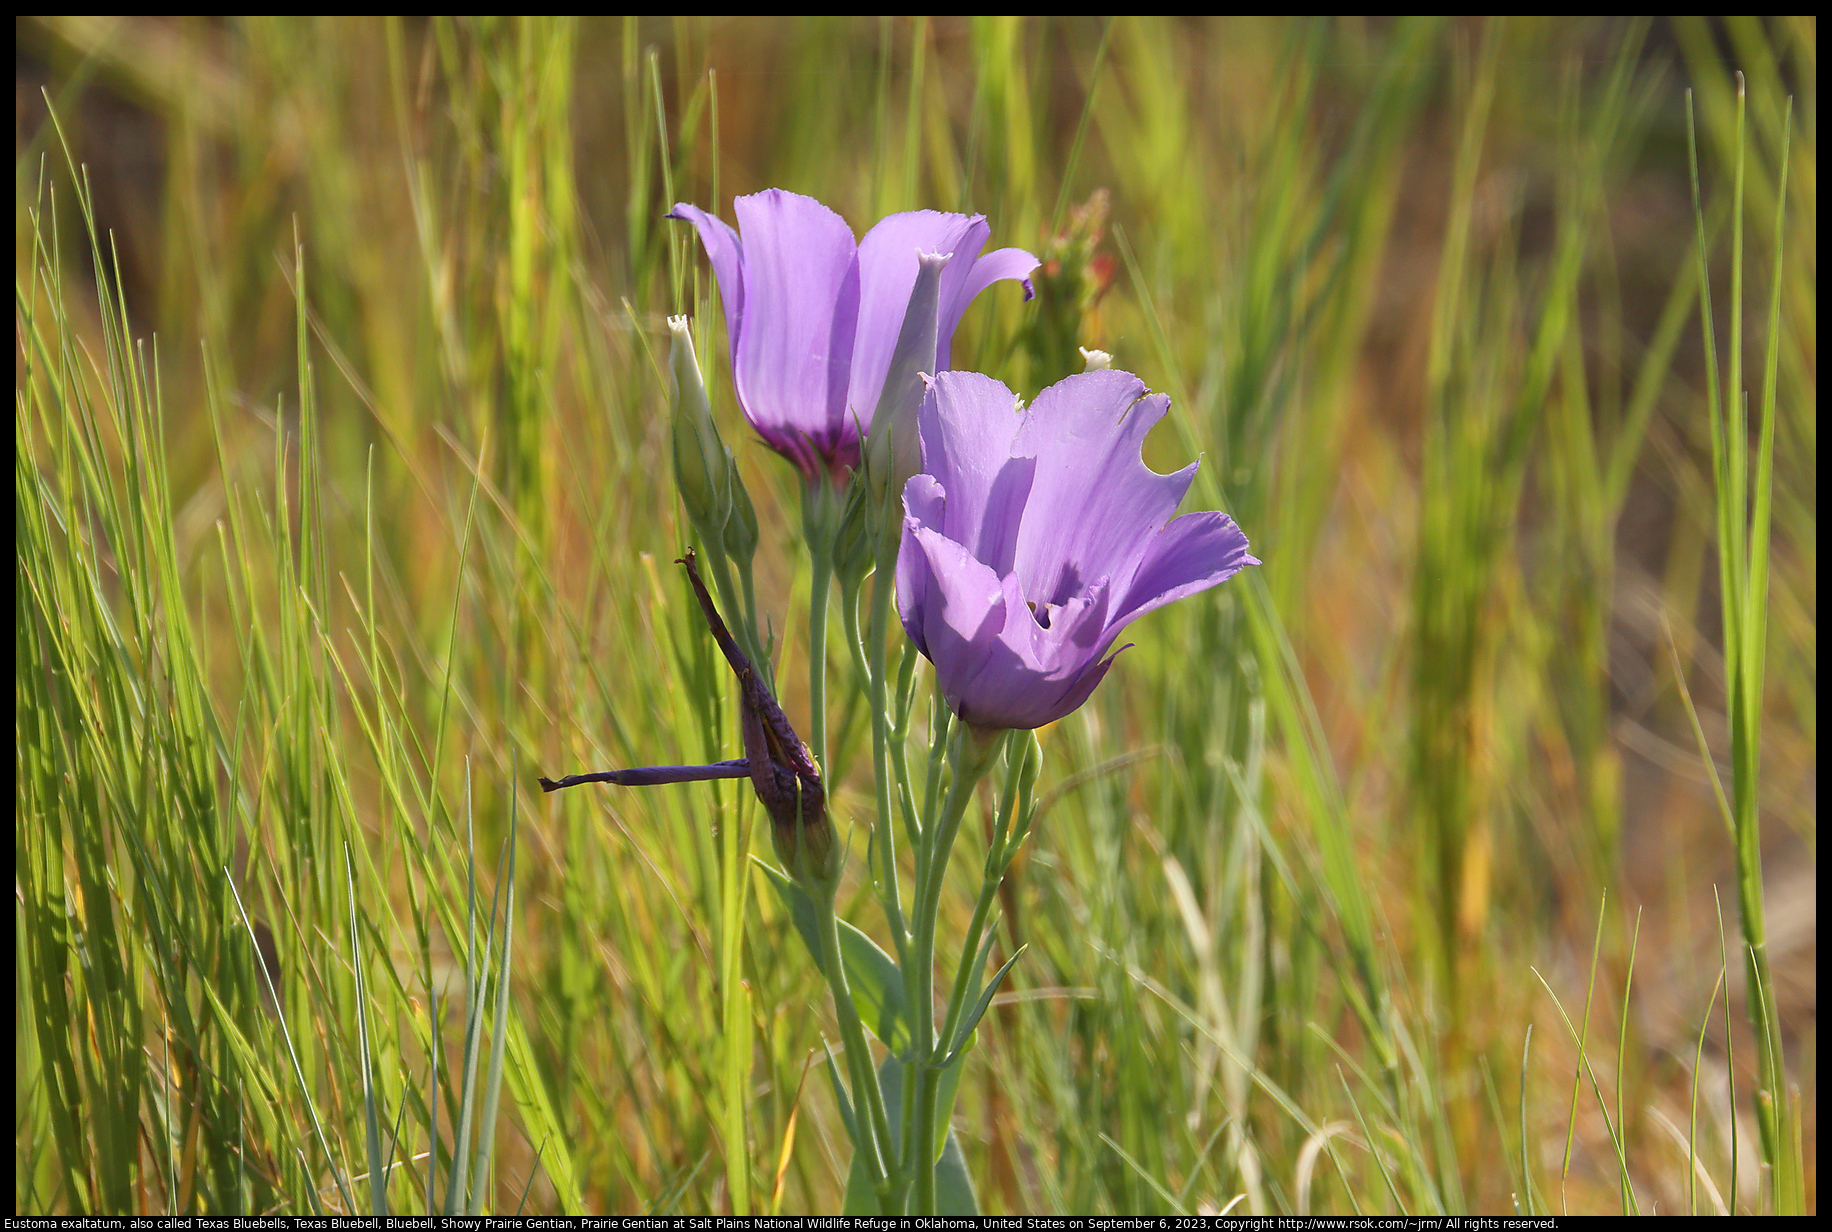 Eustoma exaltatum, also called Texas Bluebells, Texas Bluebell, Bluebell, Showy Prairie Gentian, Prairie Gentian at Salt Plains National Wildlife Refuge in Oklahoma, United States on September 6, 2023